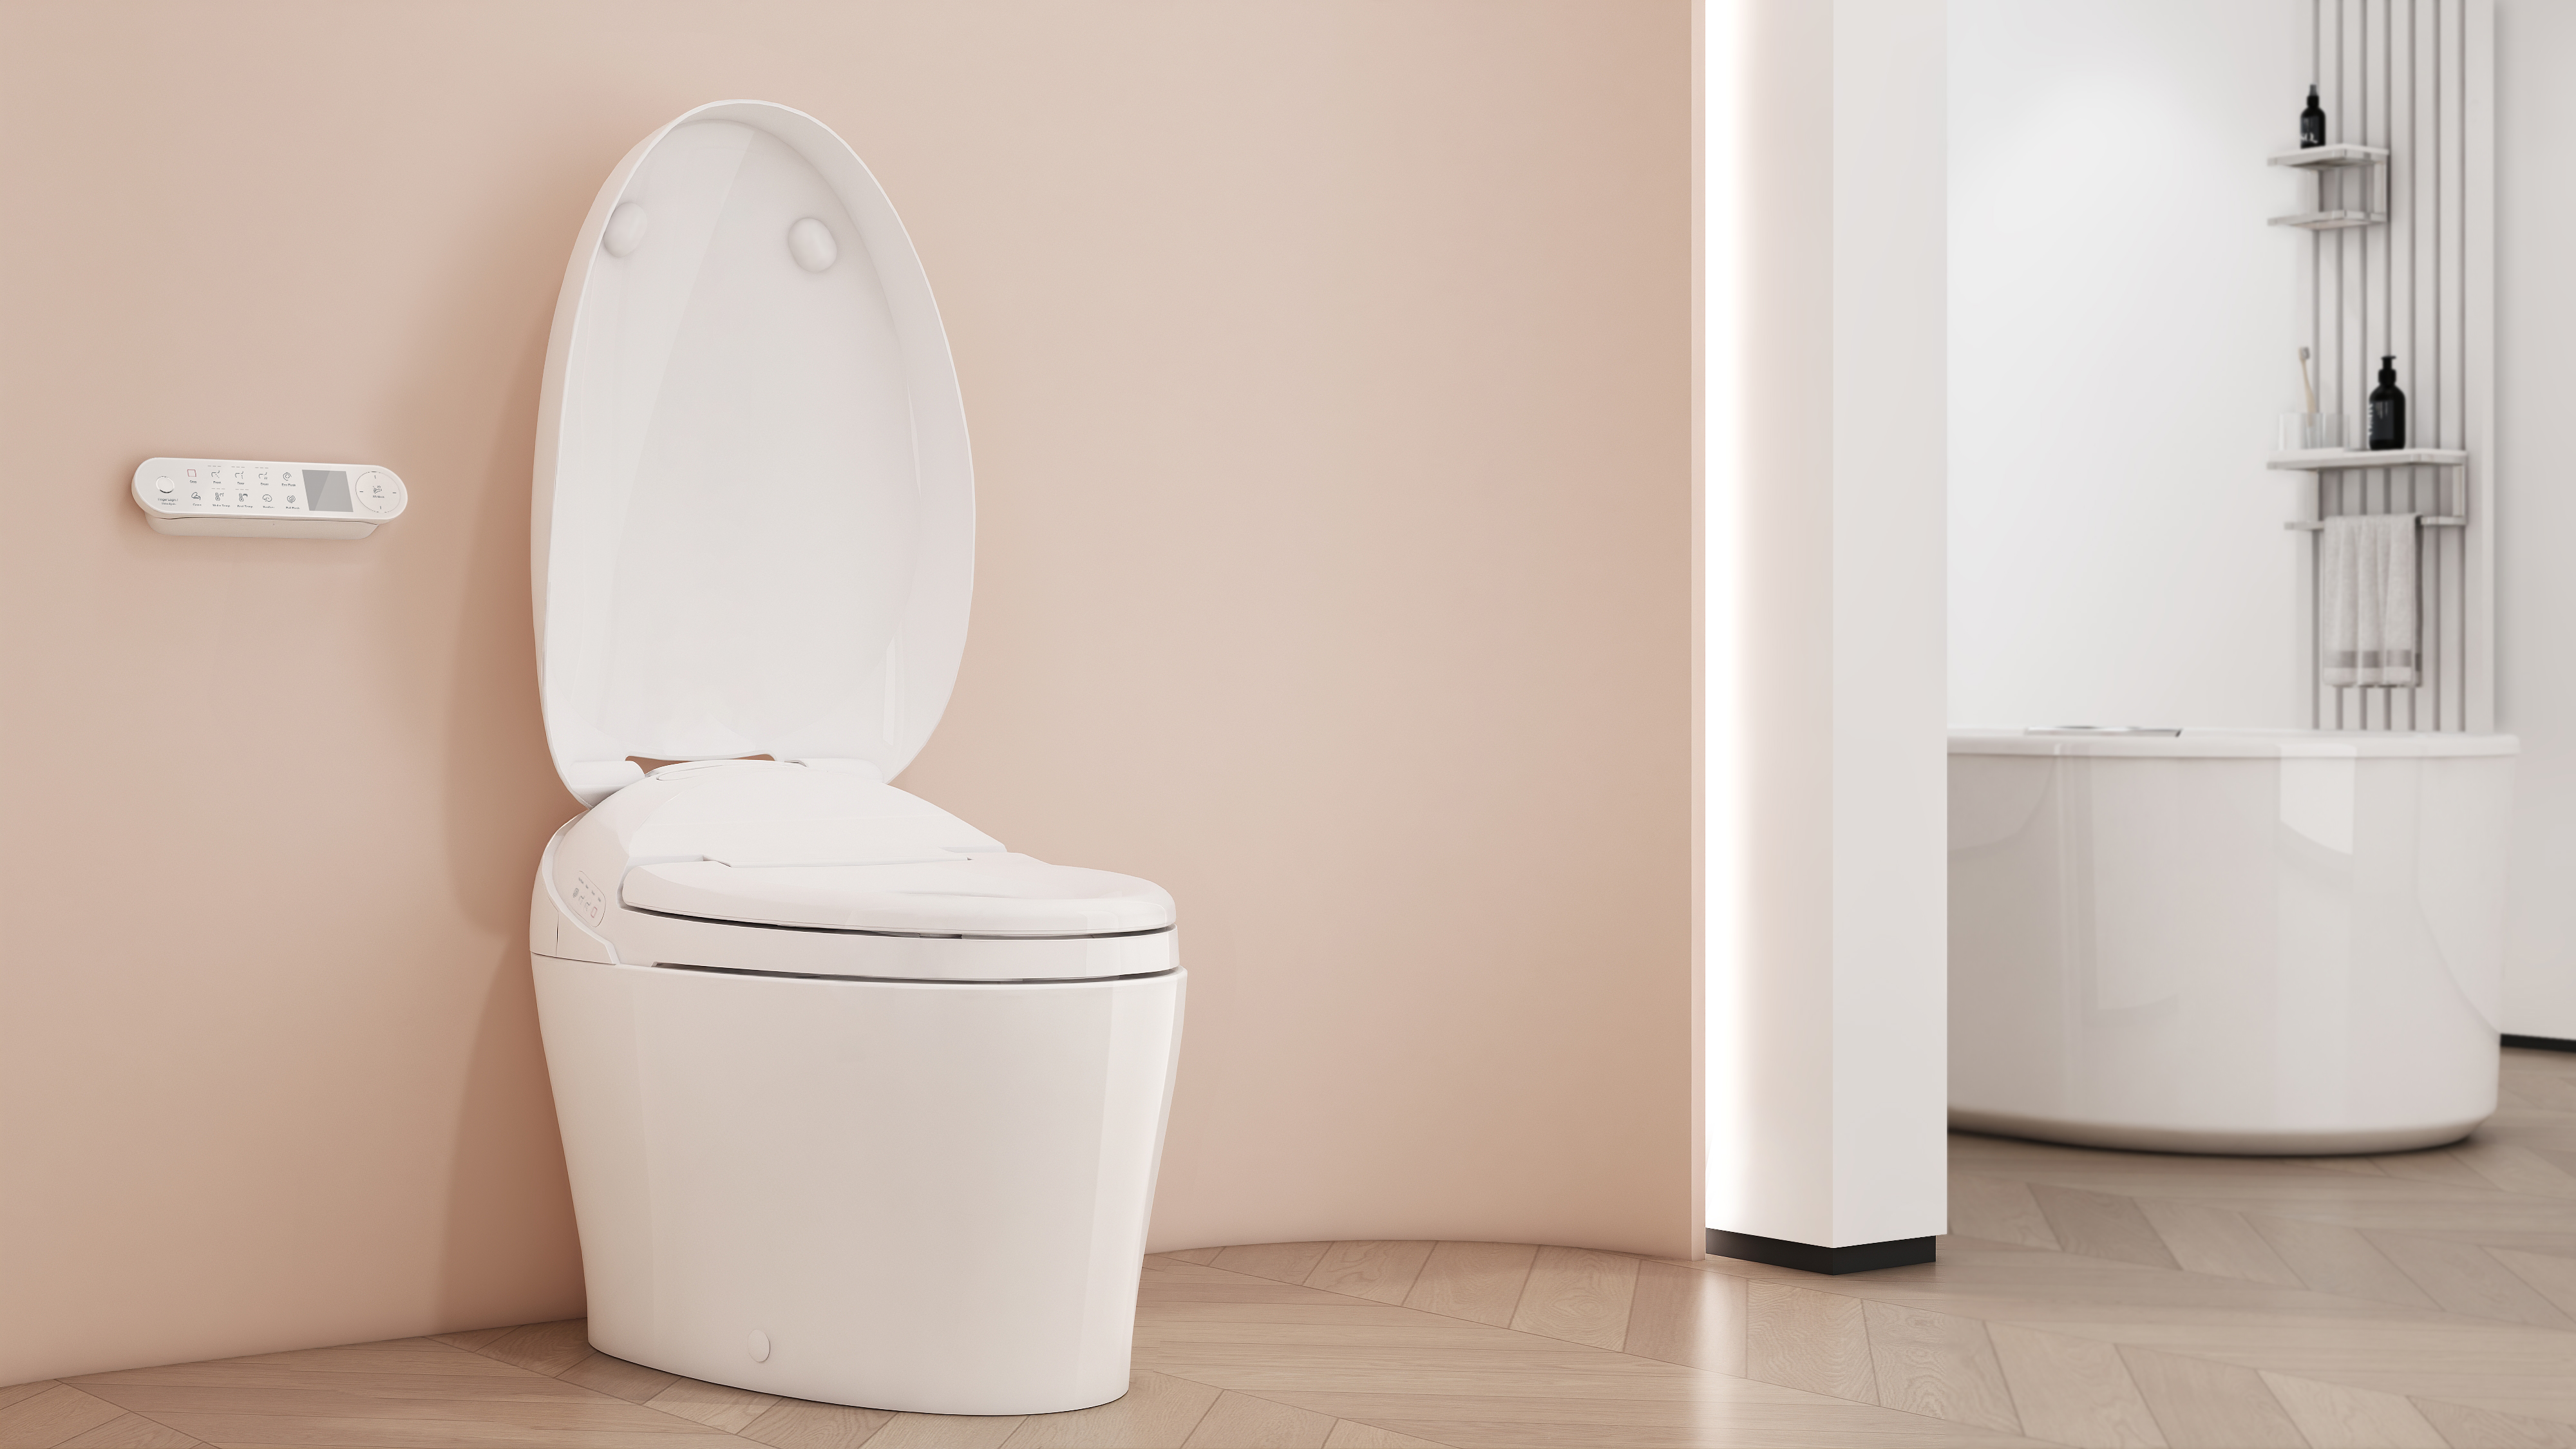 KARING 3.0 - Urinalysis Intelligent Toilet